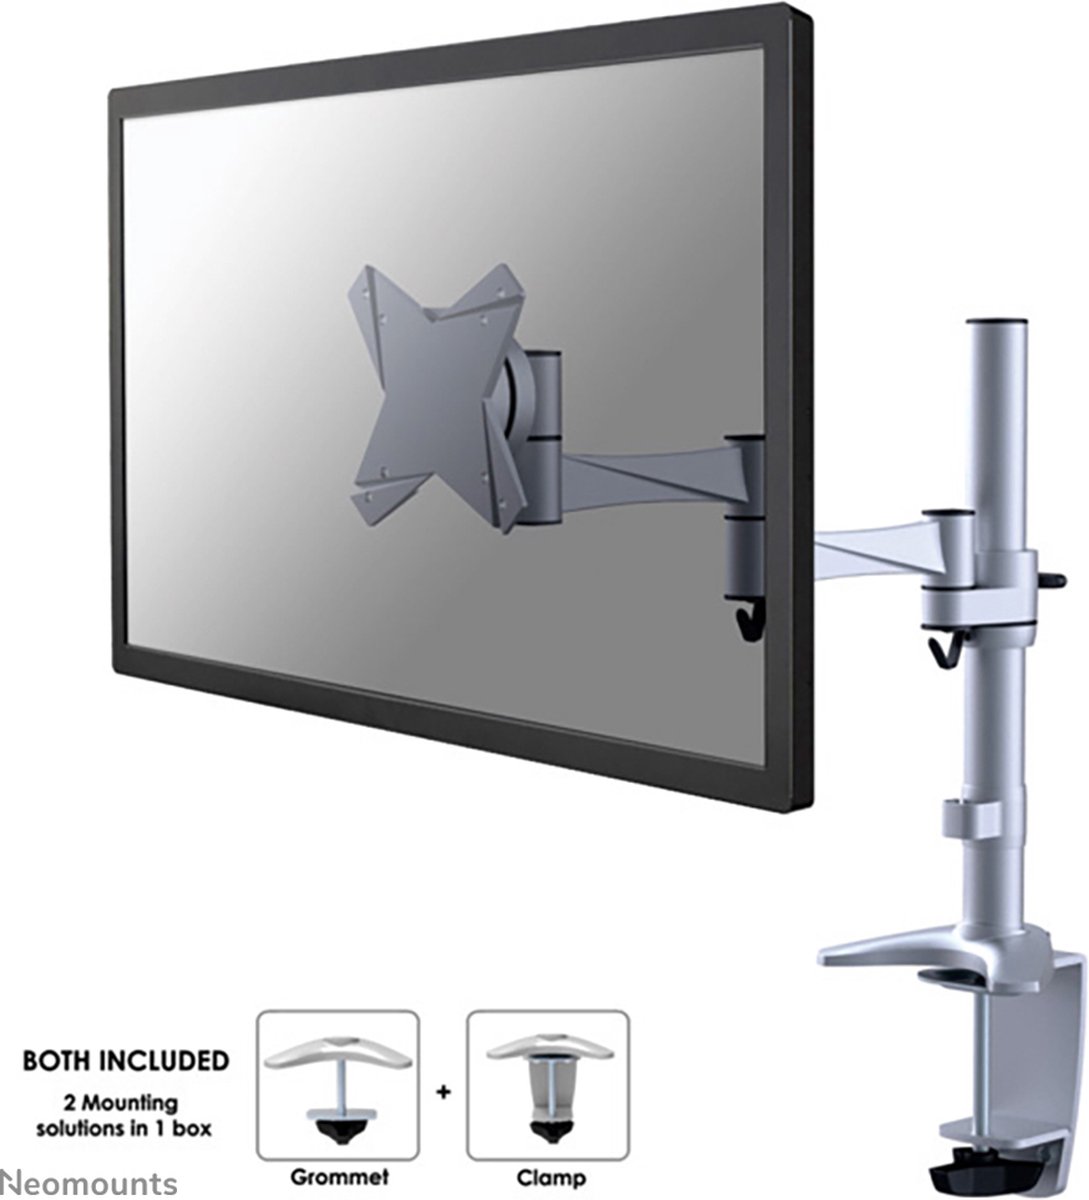 Neomounts FPMA-D1330SILVER monitorarm met 3 draaipunten voor flat screens t/m 30